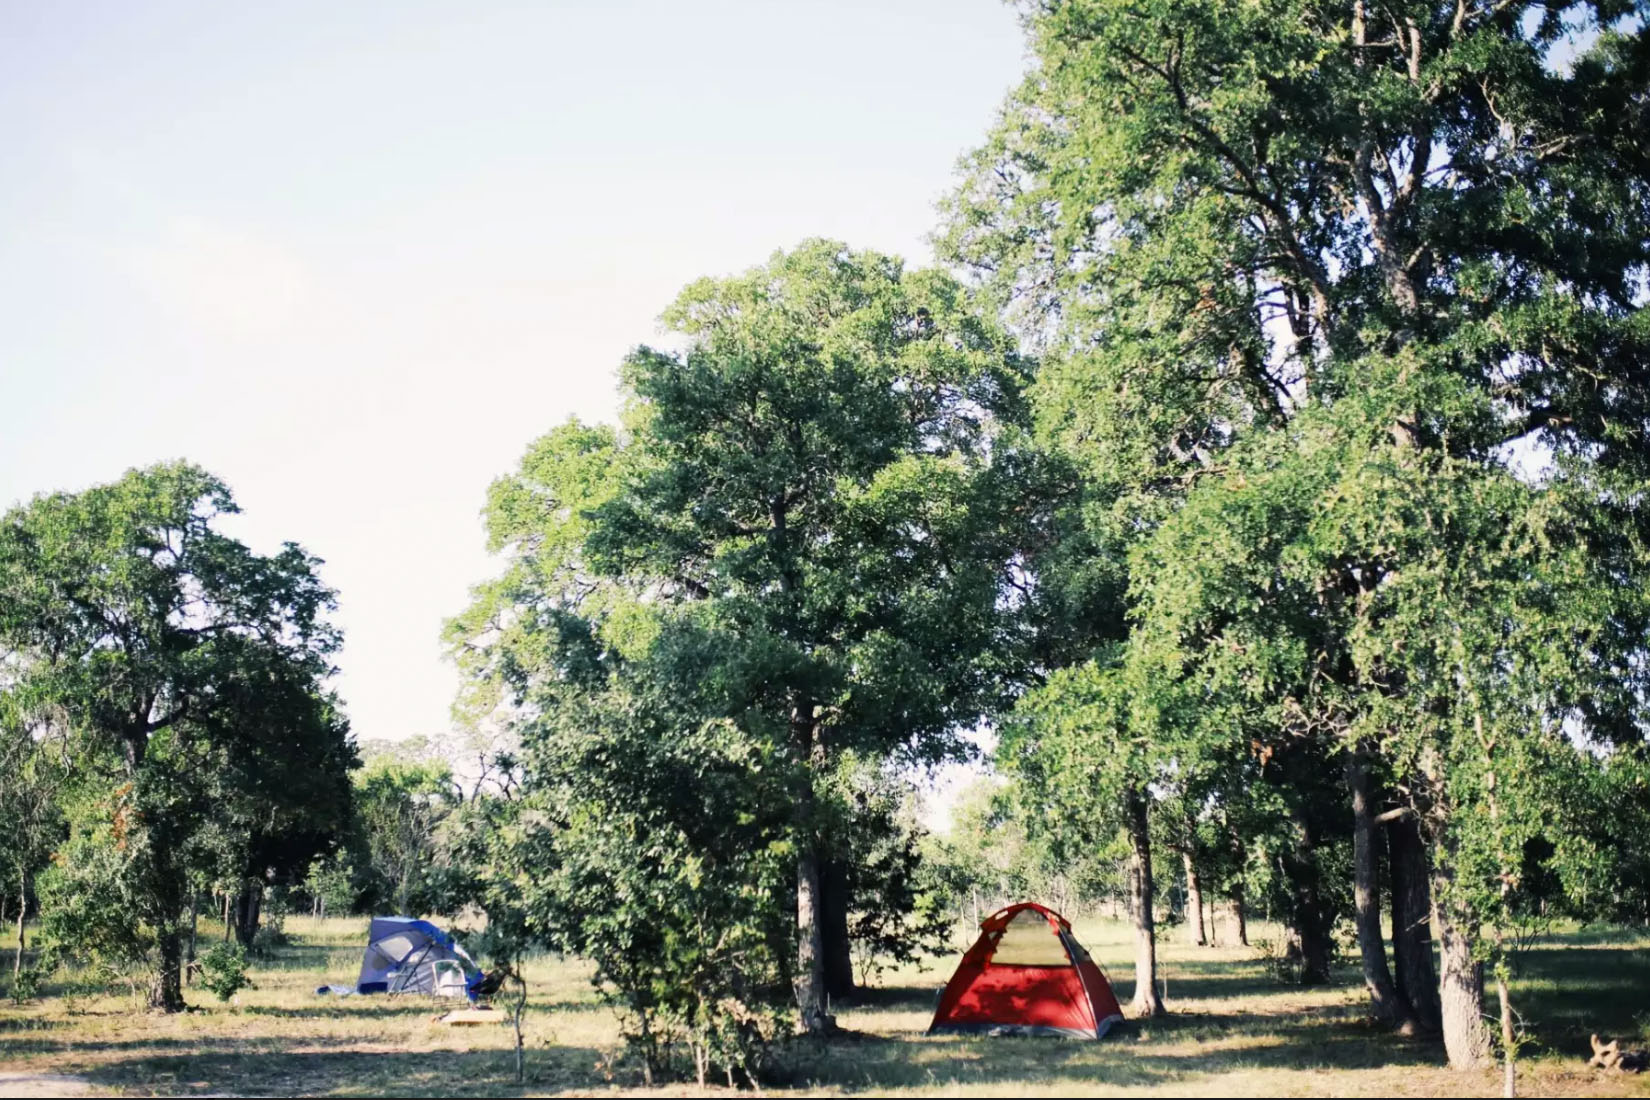 Hideaway Al oferă camping low-cost în Texas pentru $25's Hideaway offers low-cost camping in Texas for $25